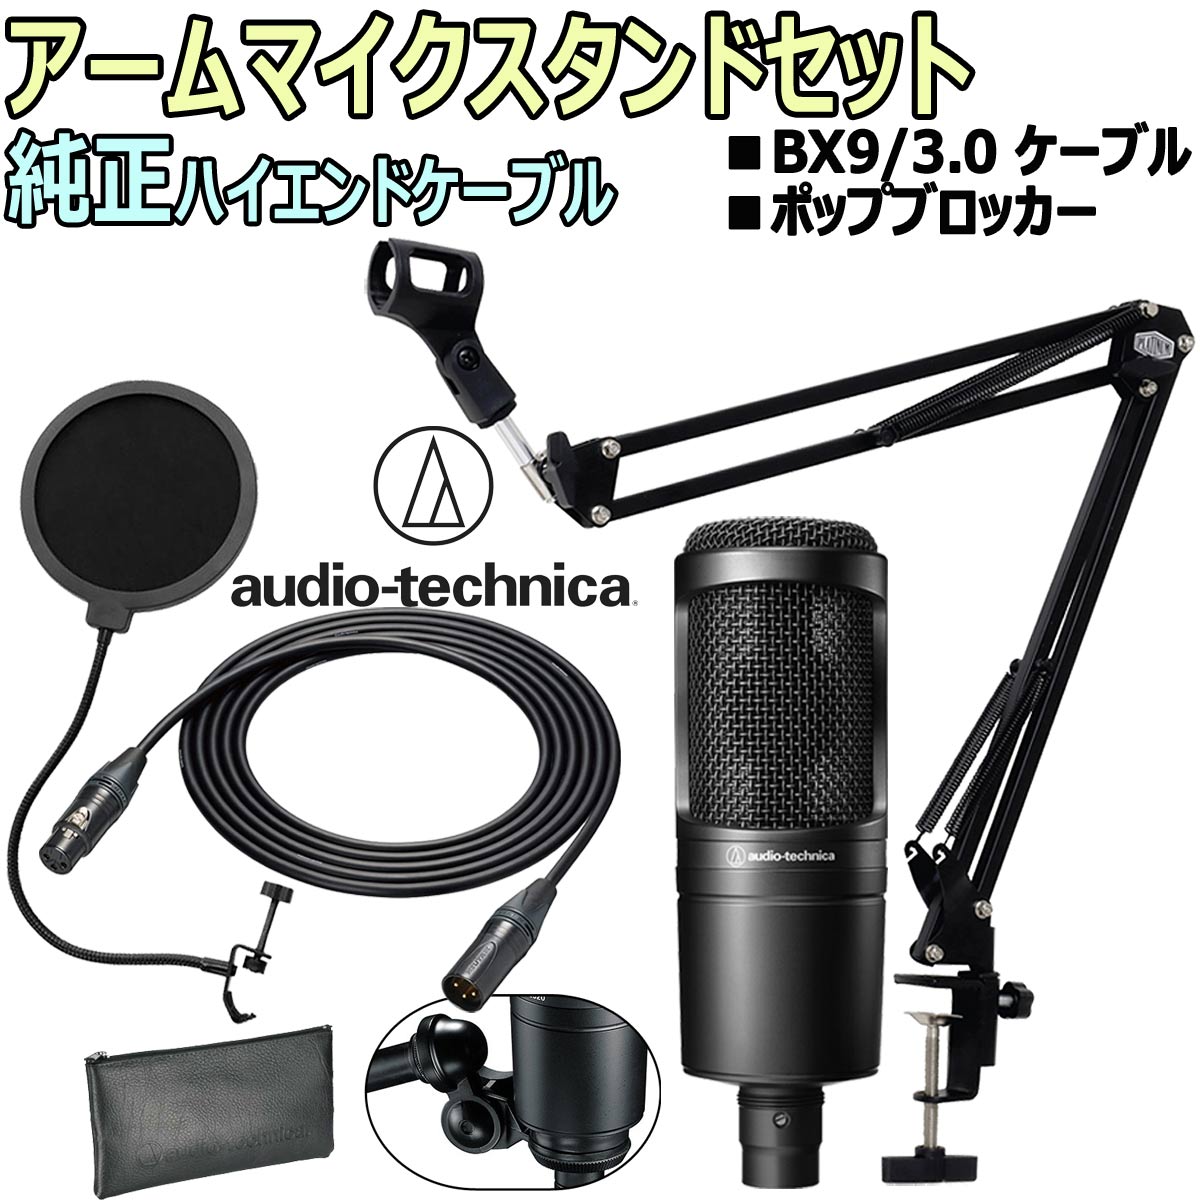 audio-technica / AT2020 コンデンサーマイク BX9スターティングセット